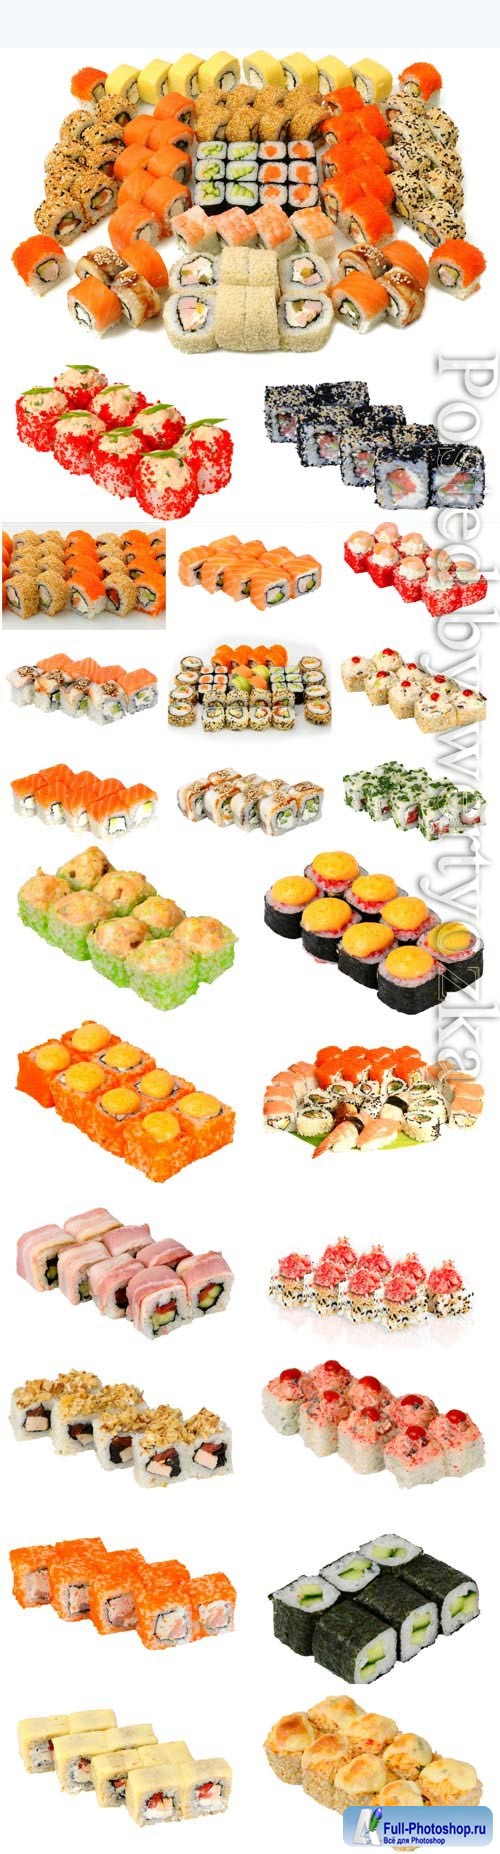 Assortment of sushi on white background stock photo